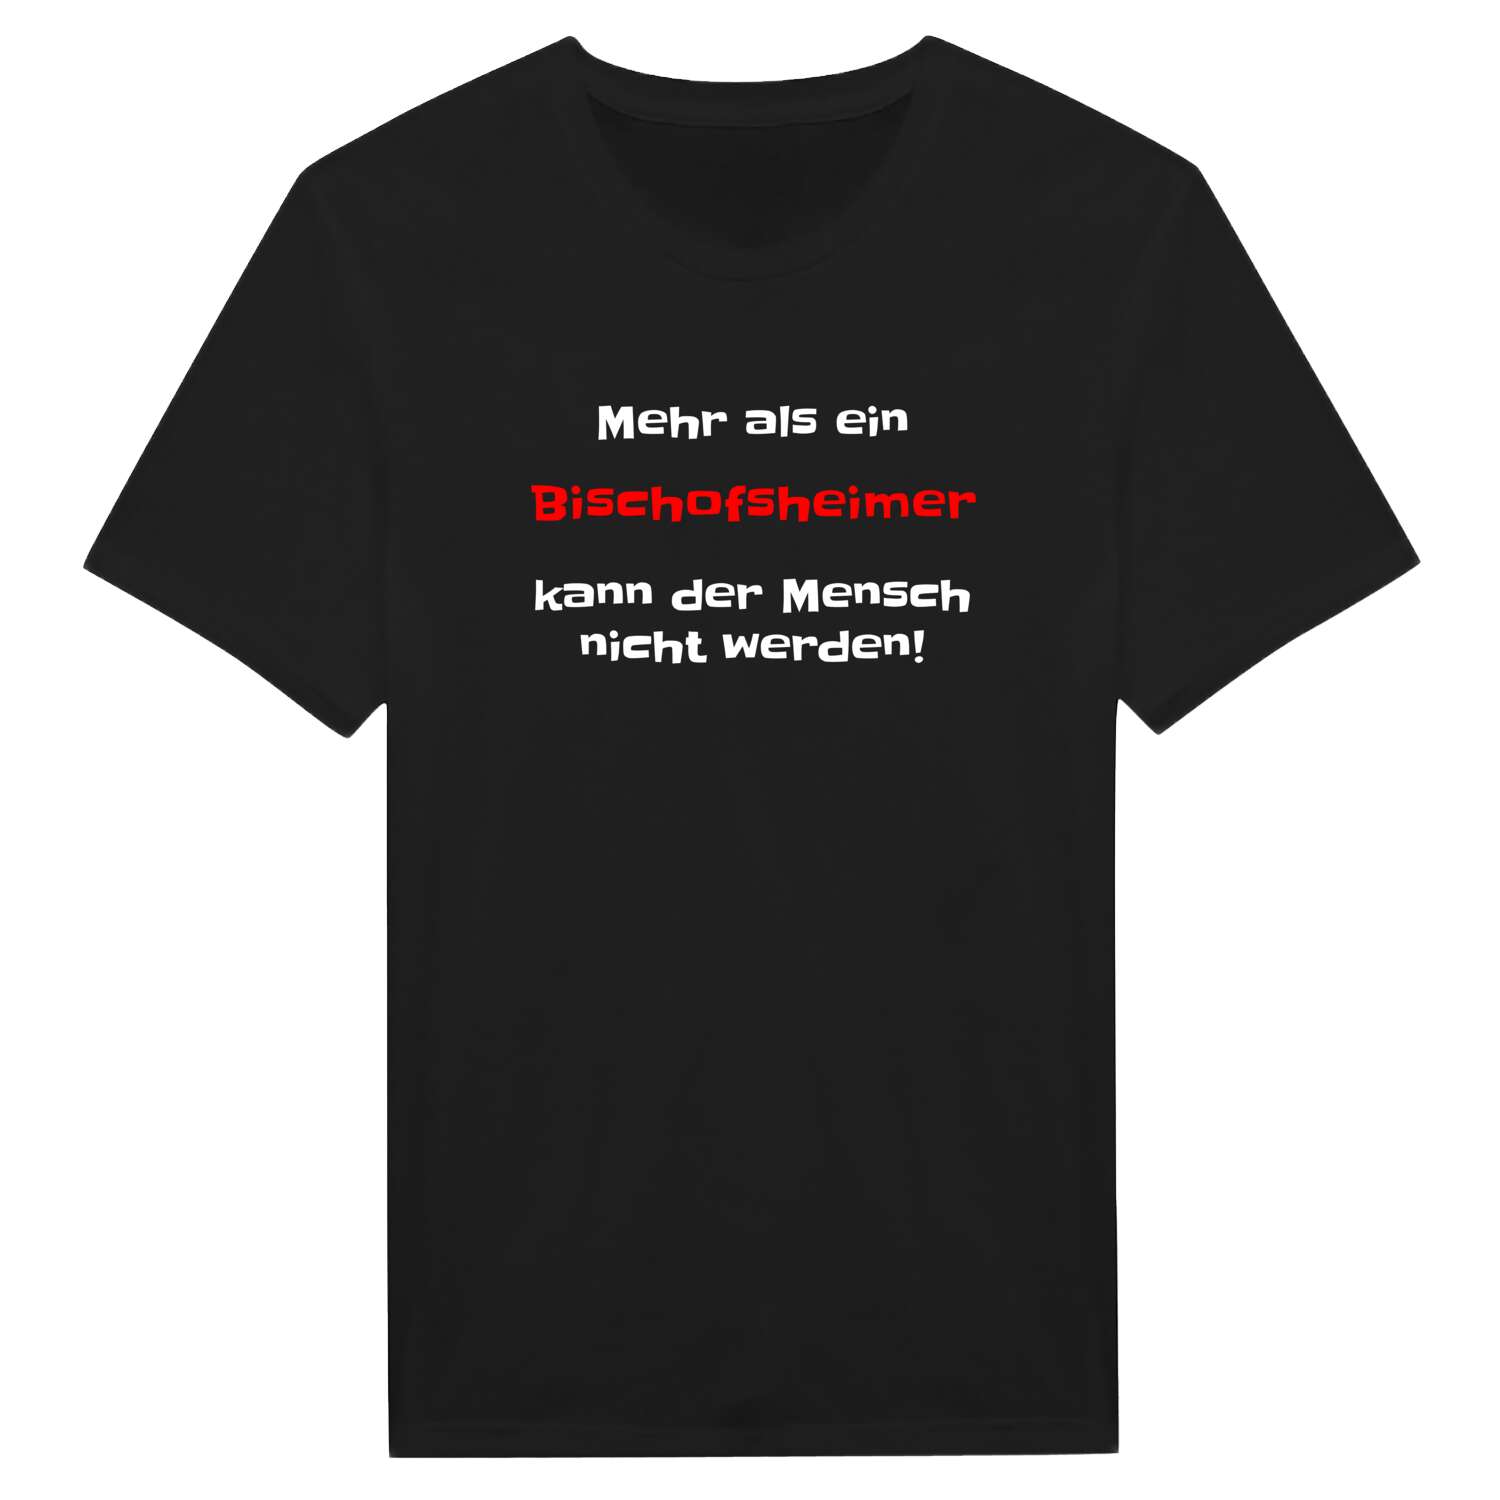 Bischofsheim T-Shirt »Mehr als ein«